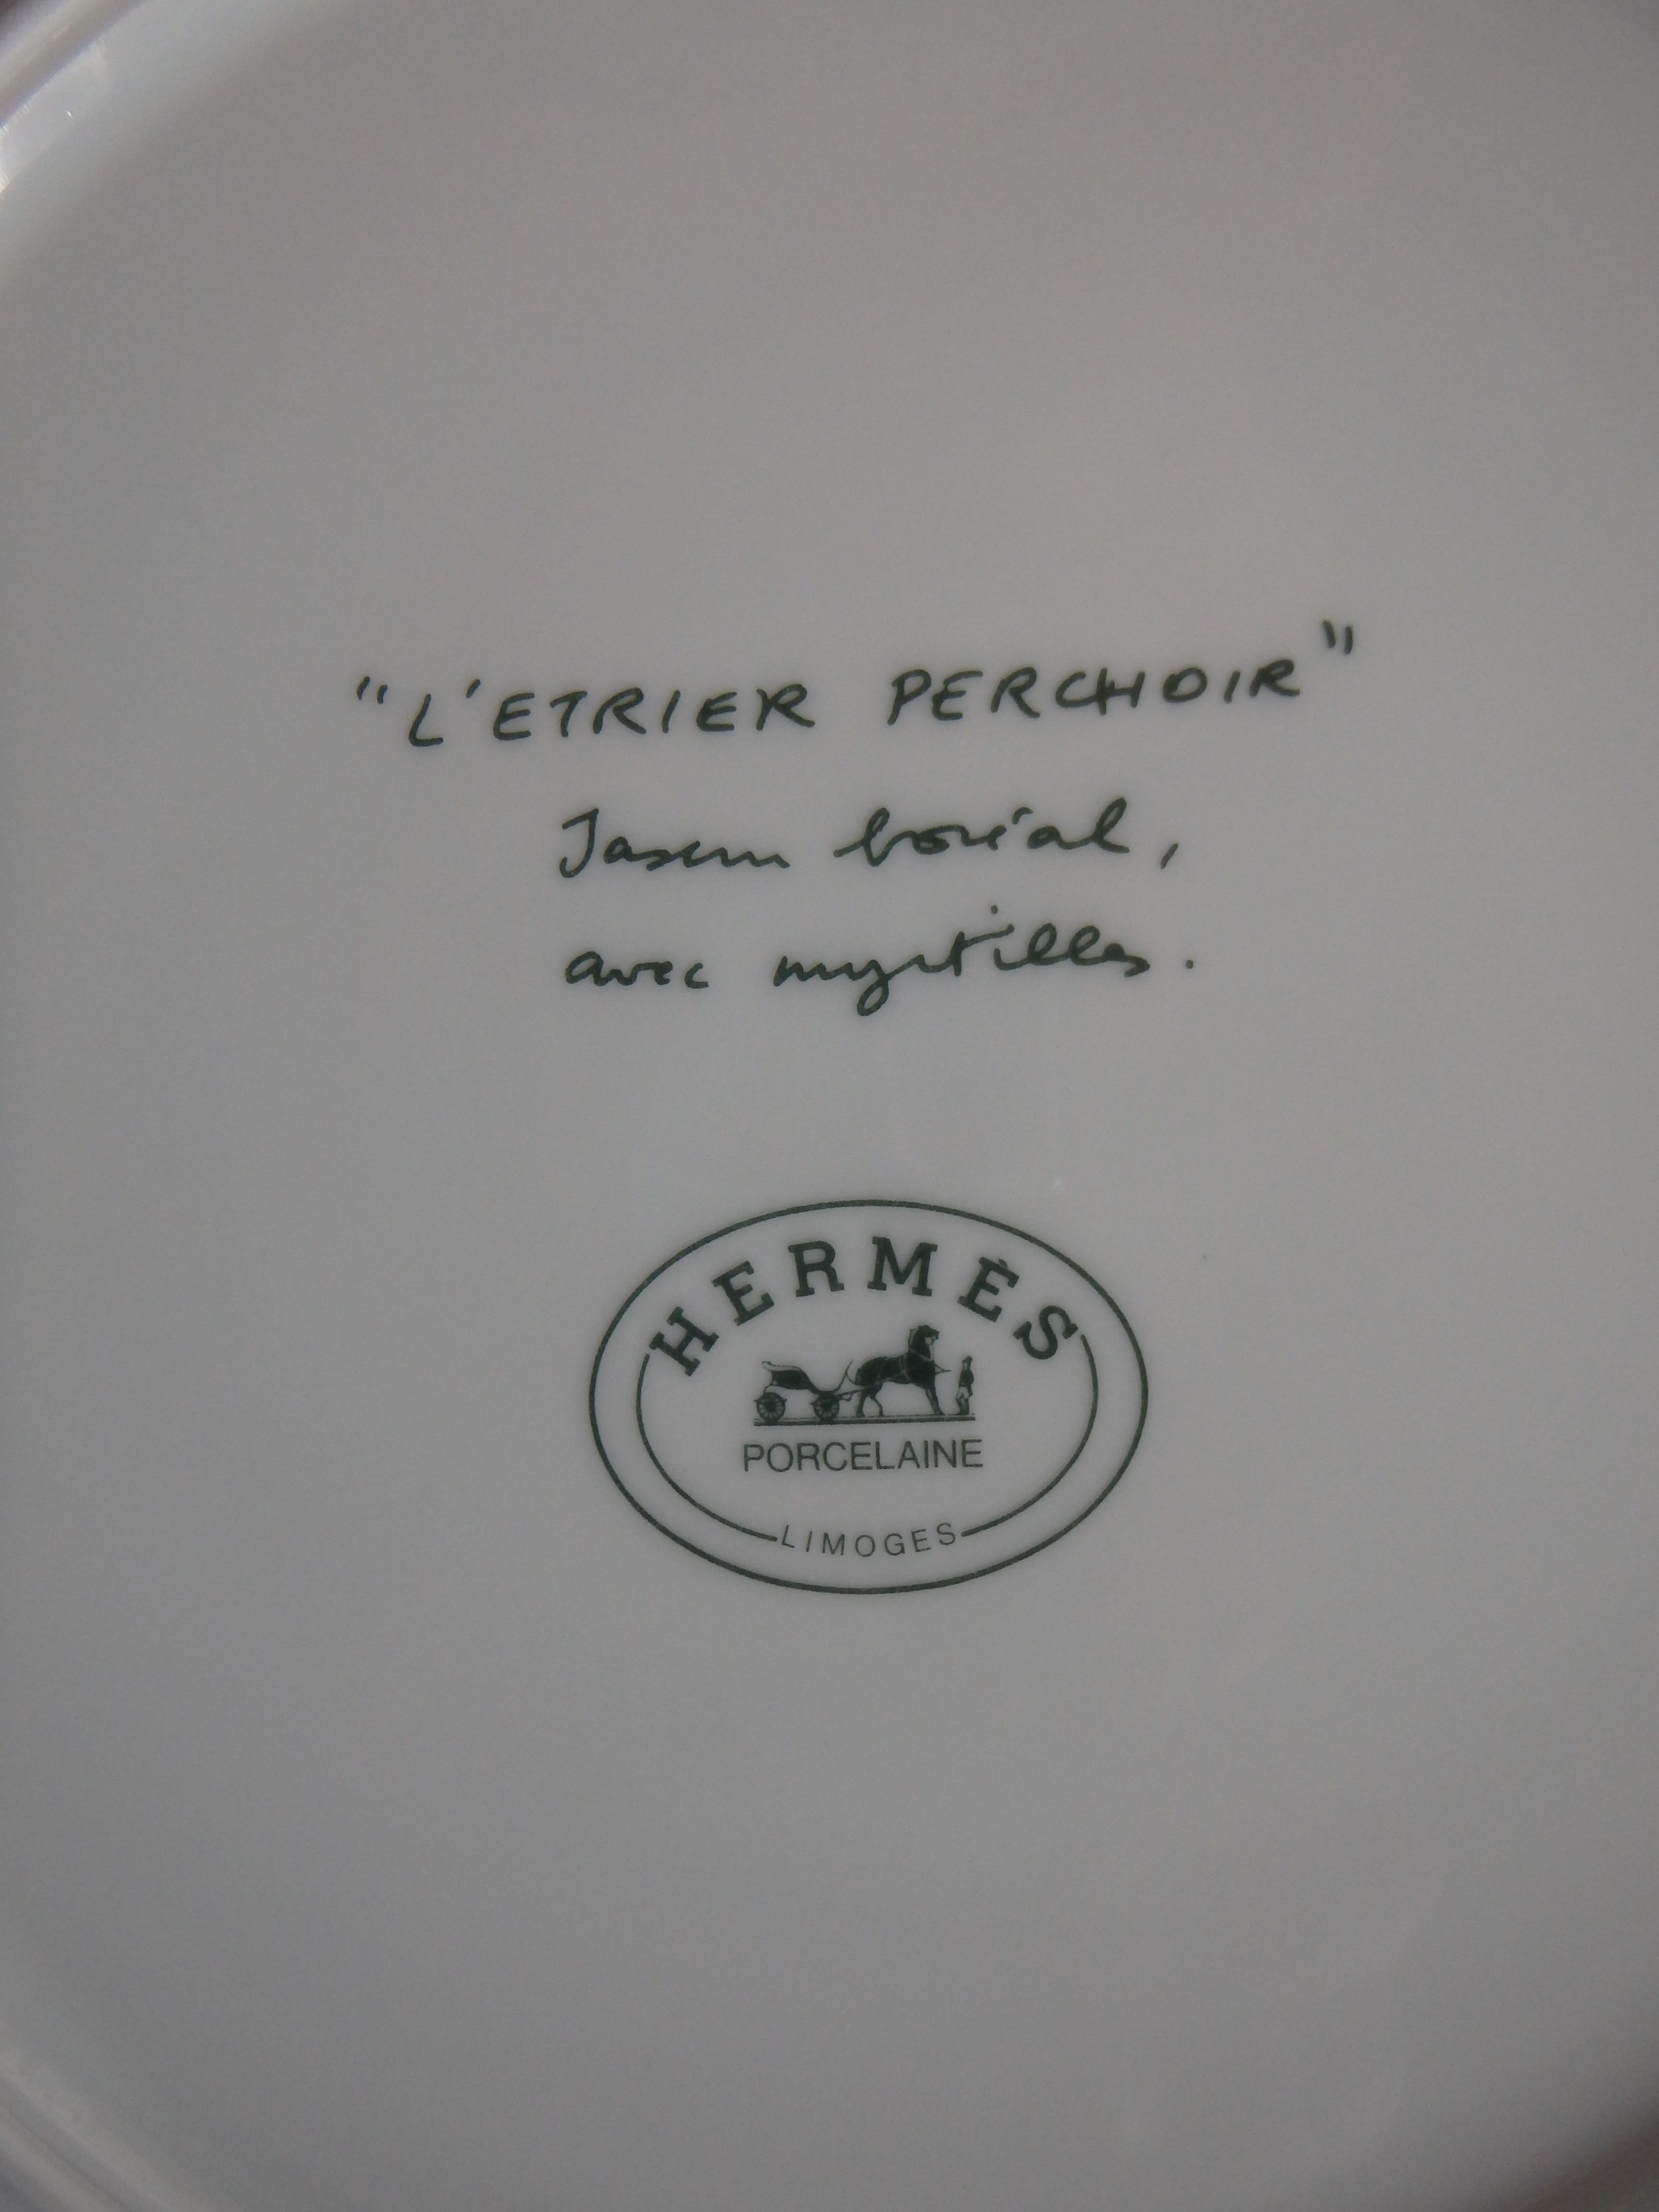 6 HERMES, Paris von Limoges, Essteller der Serie „L'etrier perchoir“  13